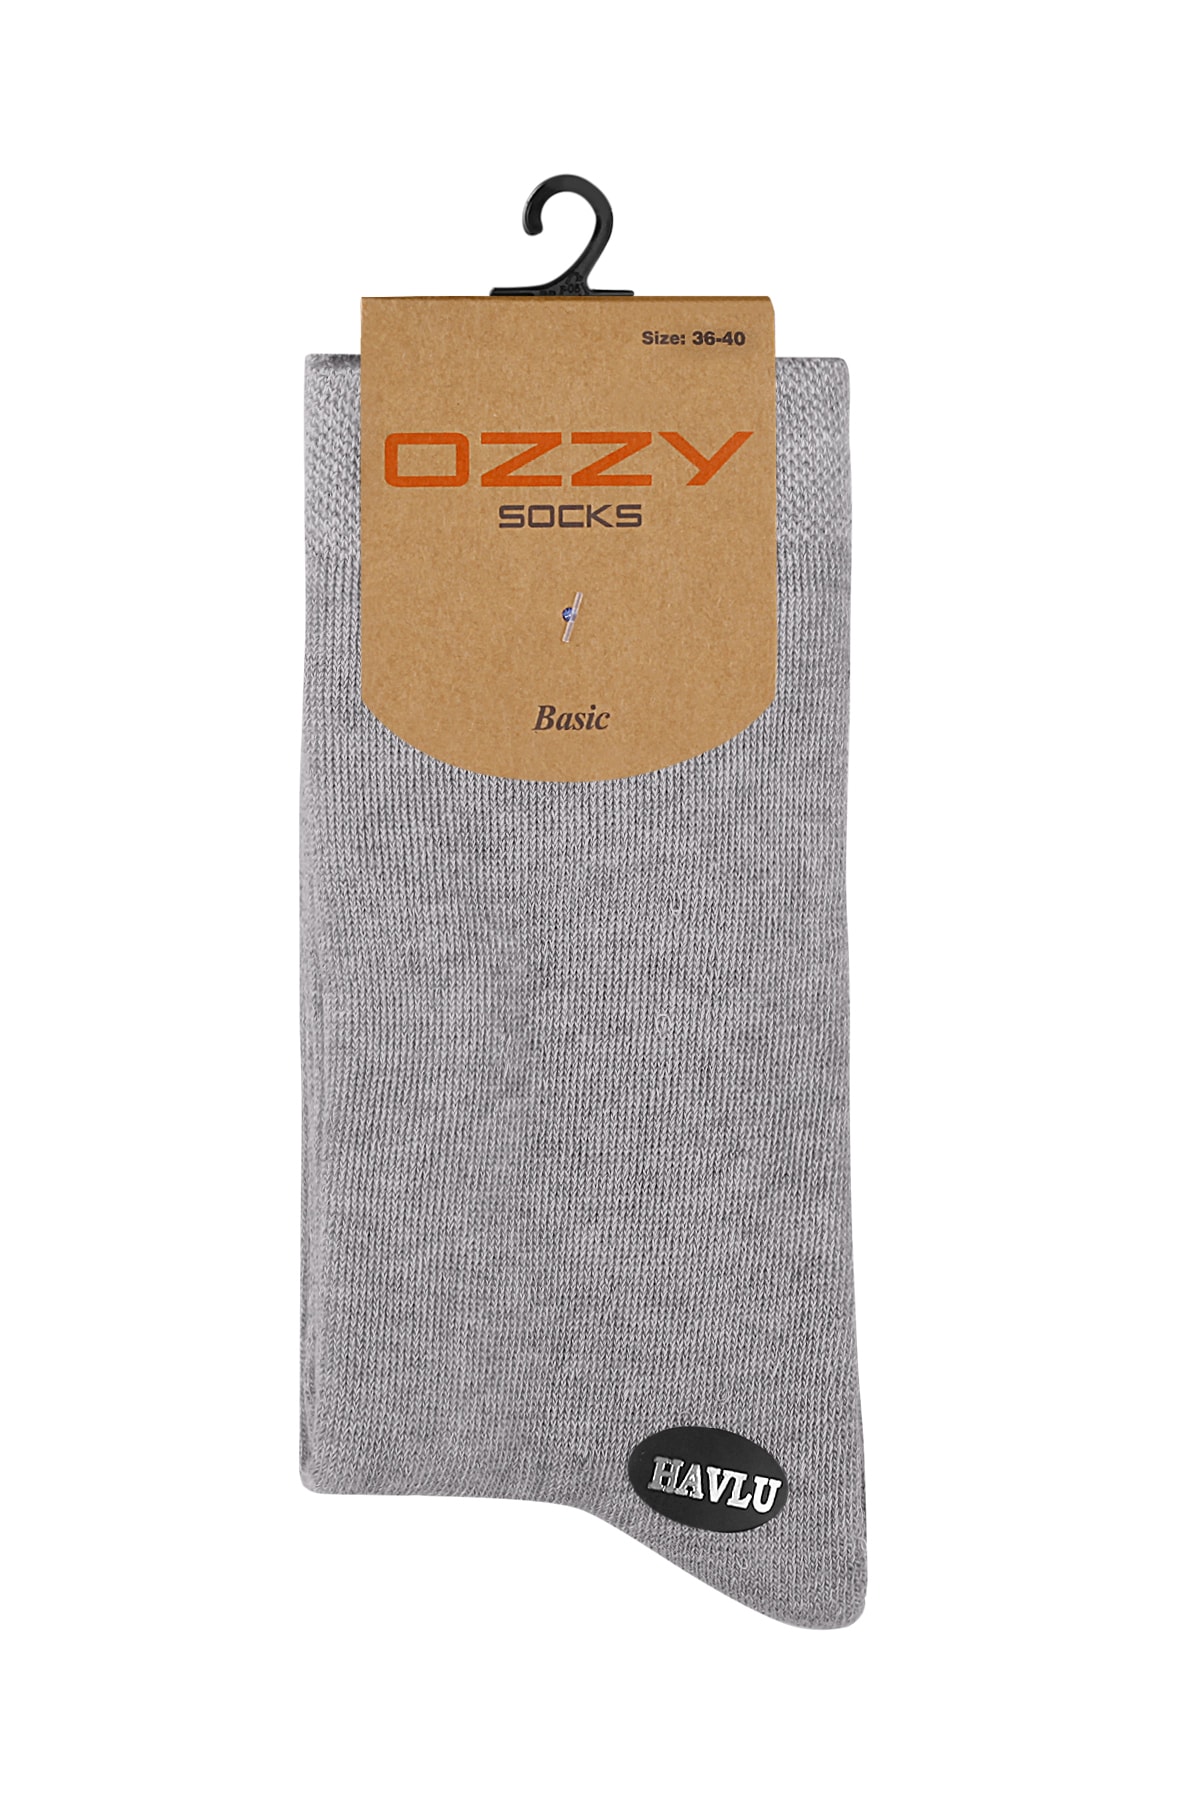 Ozzy Socks 8 Çift Kadın Havlu Soket Çorap Kışlık Dayanıklı Topuk Ve Burun NC10812